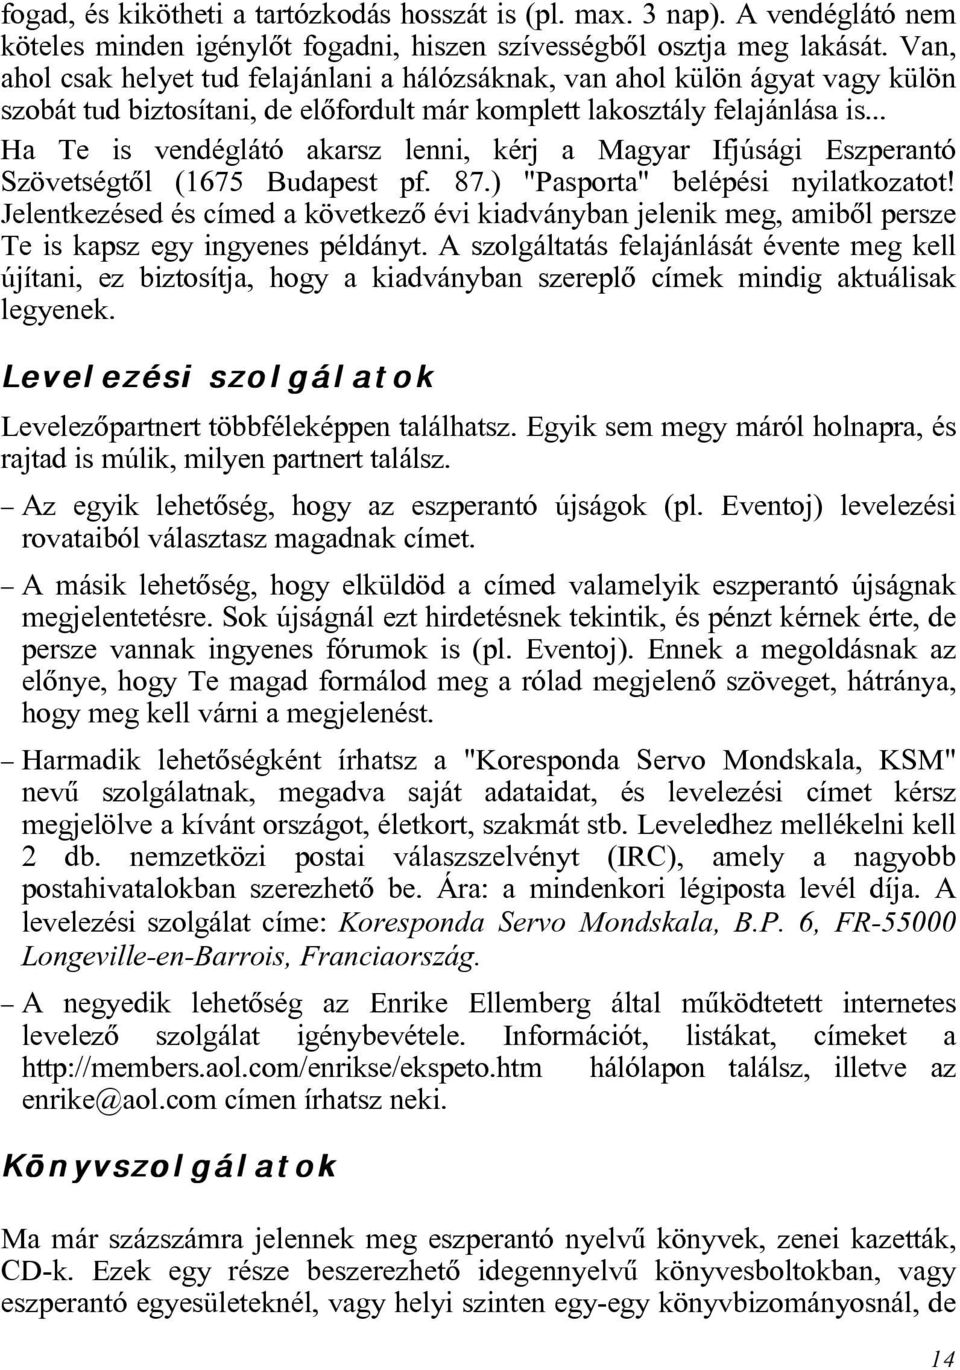 .. Ha Te is vendéglátó akarsz lenni, kérj a Magyar Ifjúsági Eszperantó Szövetségtõl (1675 Budapest pf. 87.) "Pasporta" belépési nyilatkozatot!